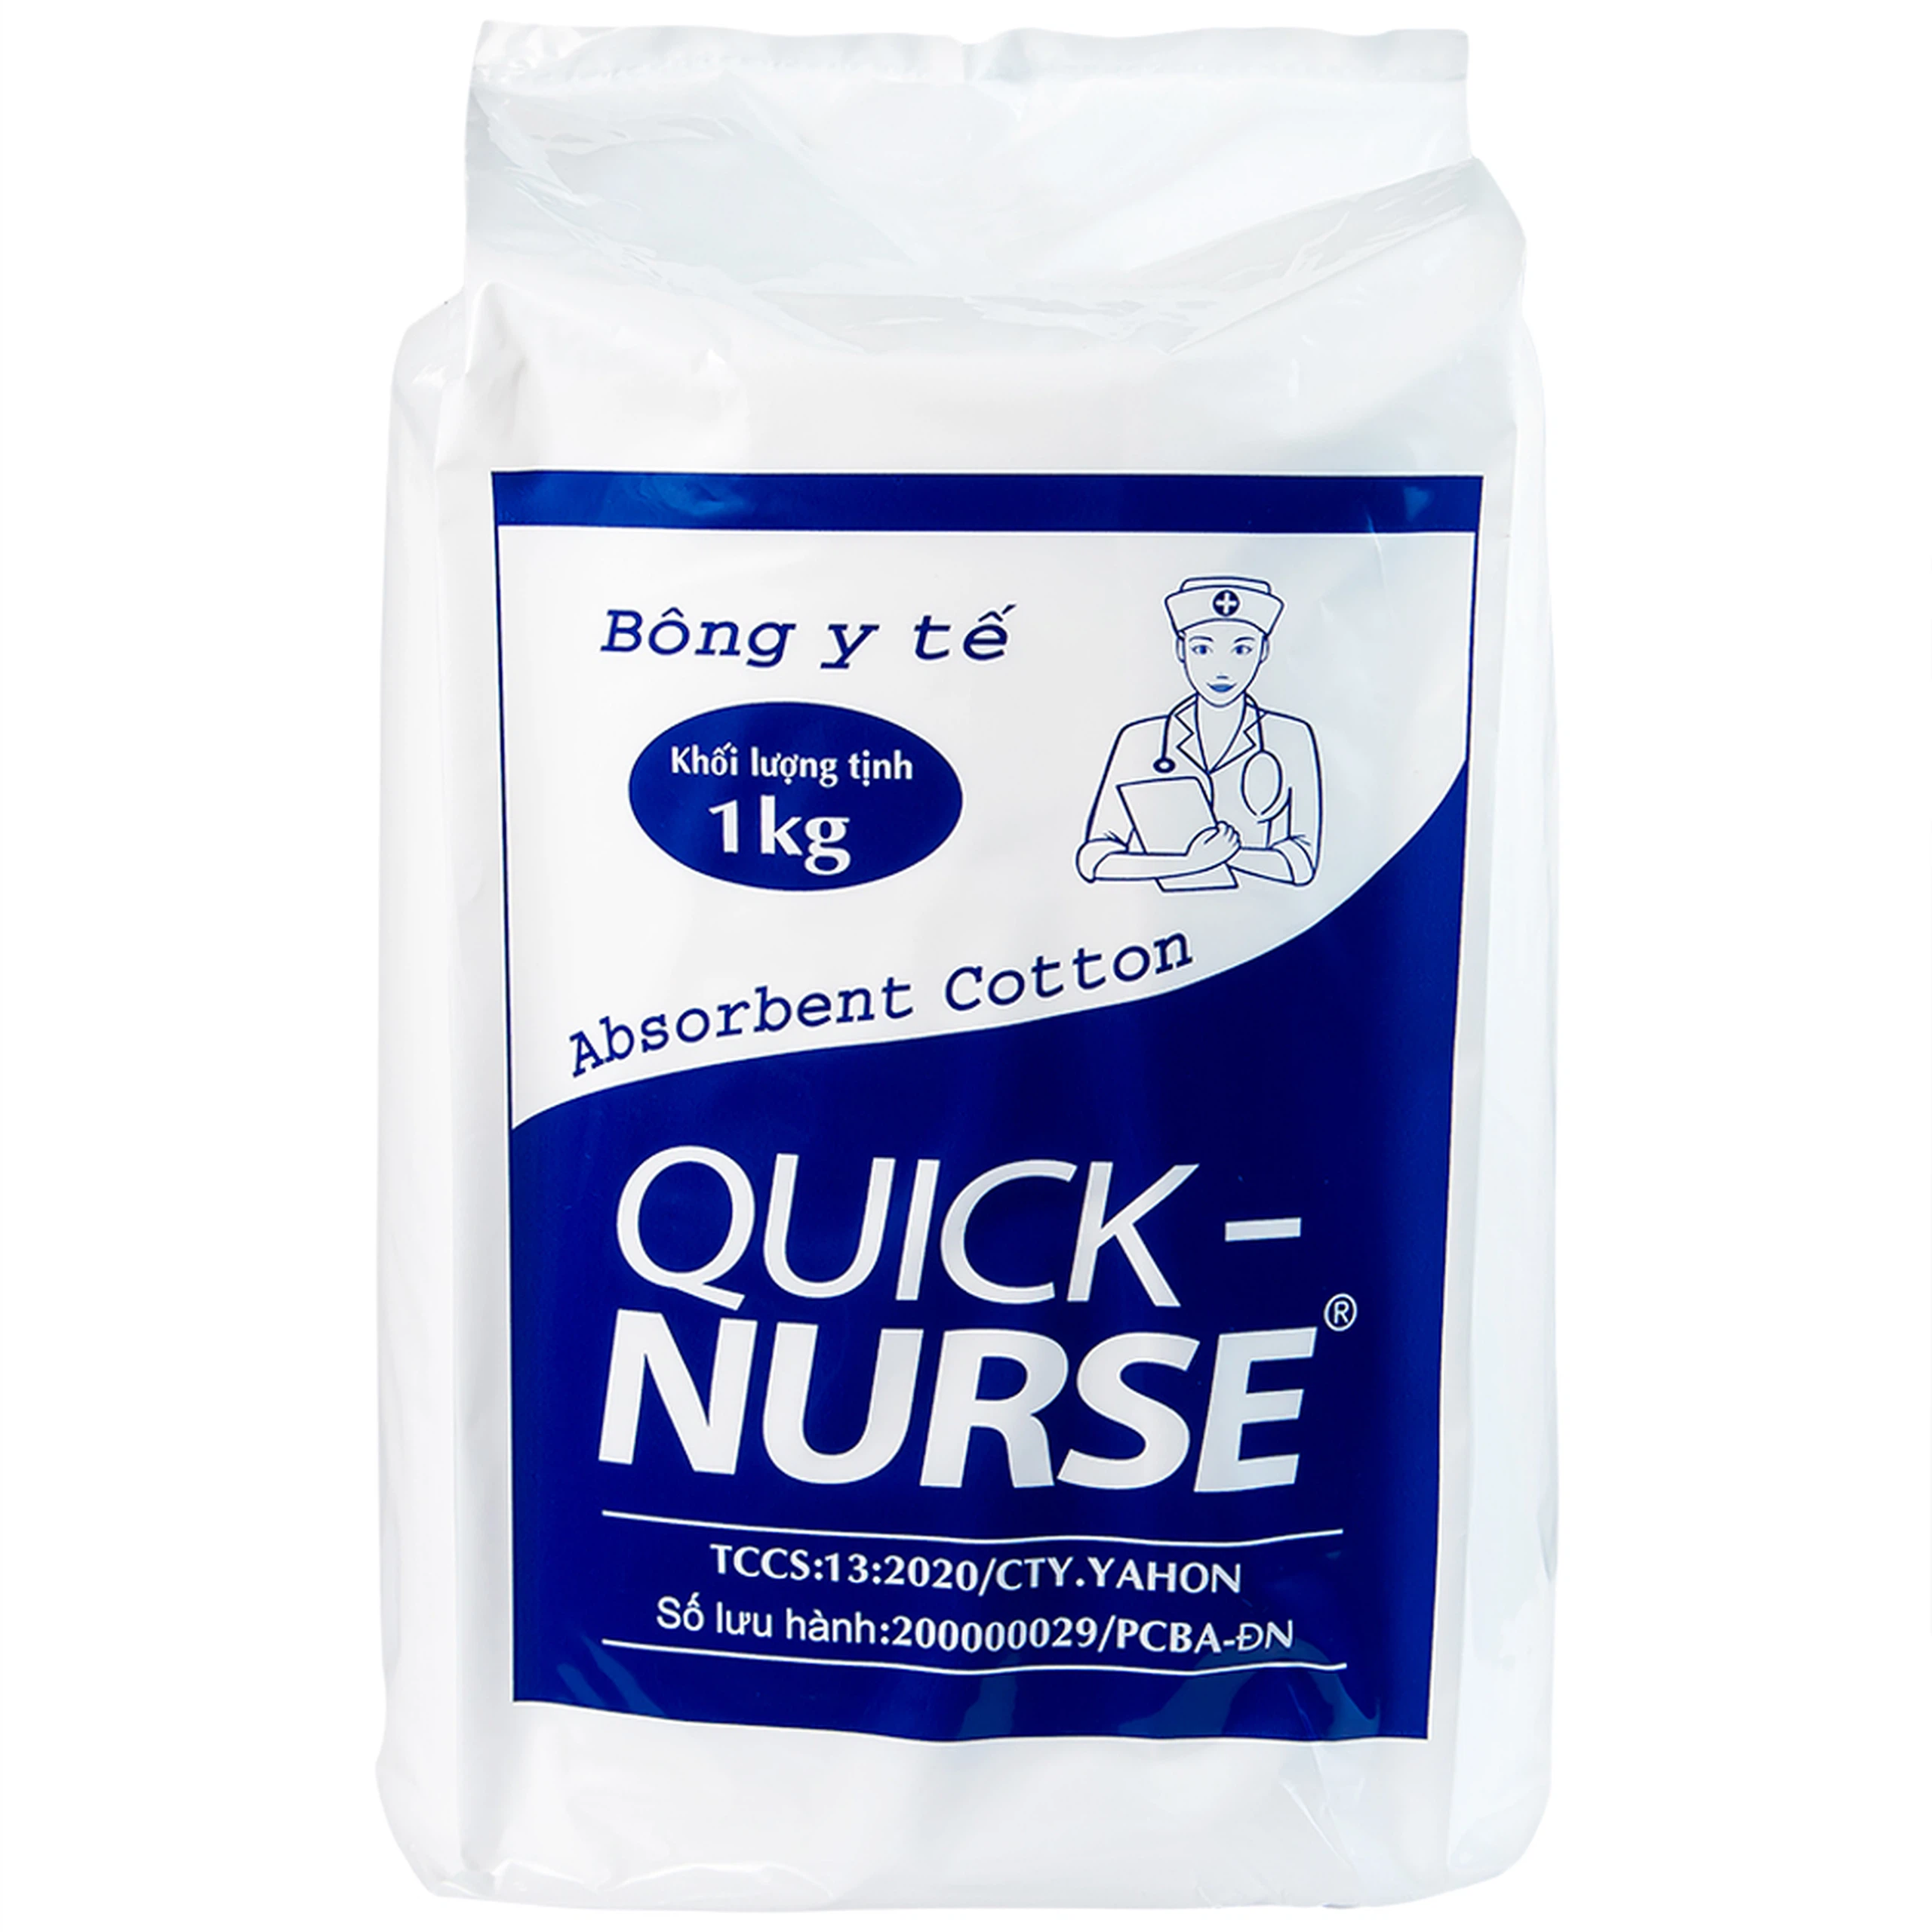 Bông y tế Quick Nurse 1kg dùng cho vết thương ngoài da, sát trùng, vệ sinh cho bé (Gói)